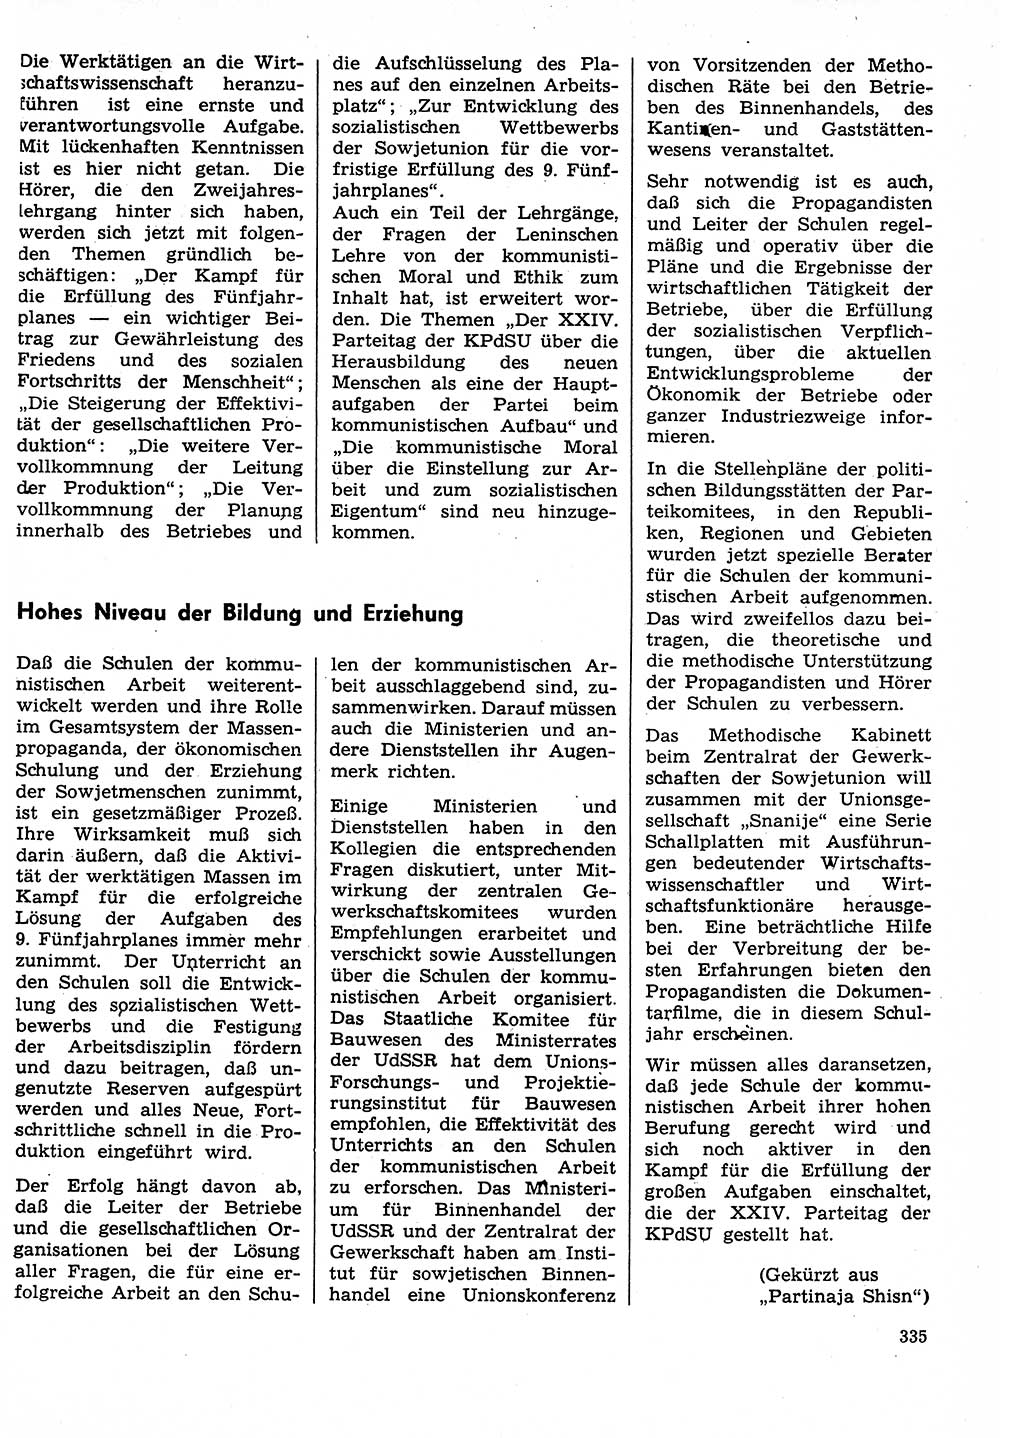 Neuer Weg (NW), Organ des Zentralkomitees (ZK) der SED (Sozialistische Einheitspartei Deutschlands) für Fragen des Parteilebens, 29. Jahrgang [Deutsche Demokratische Republik (DDR)] 1974, Seite 335 (NW ZK SED DDR 1974, S. 335)